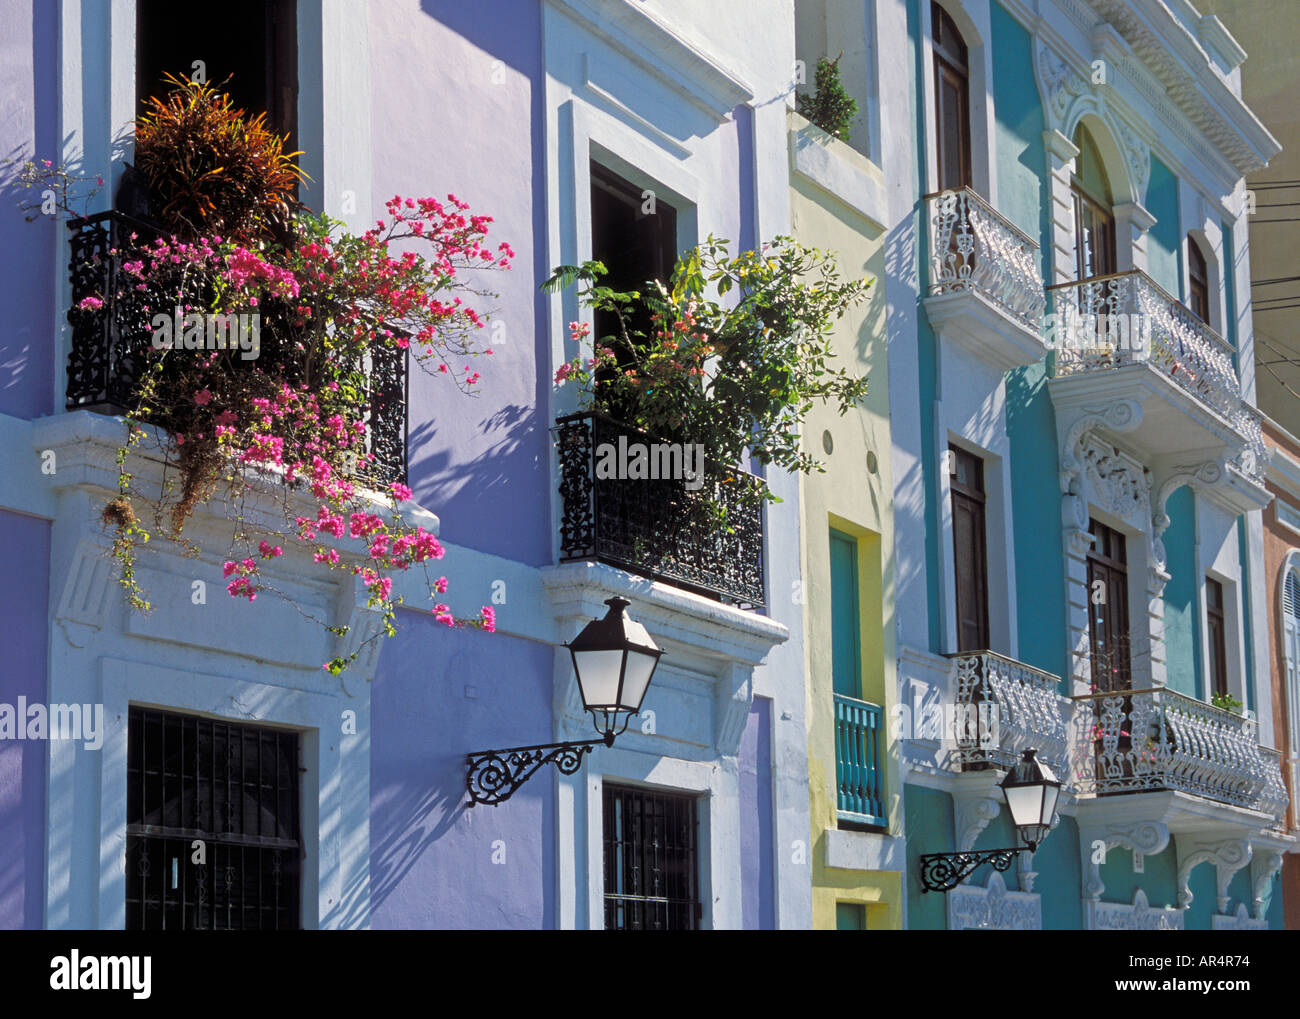 Colorful facade of apartment houses on Calle de Tetuán in Old San Juan Puerto Rico Stock Photo